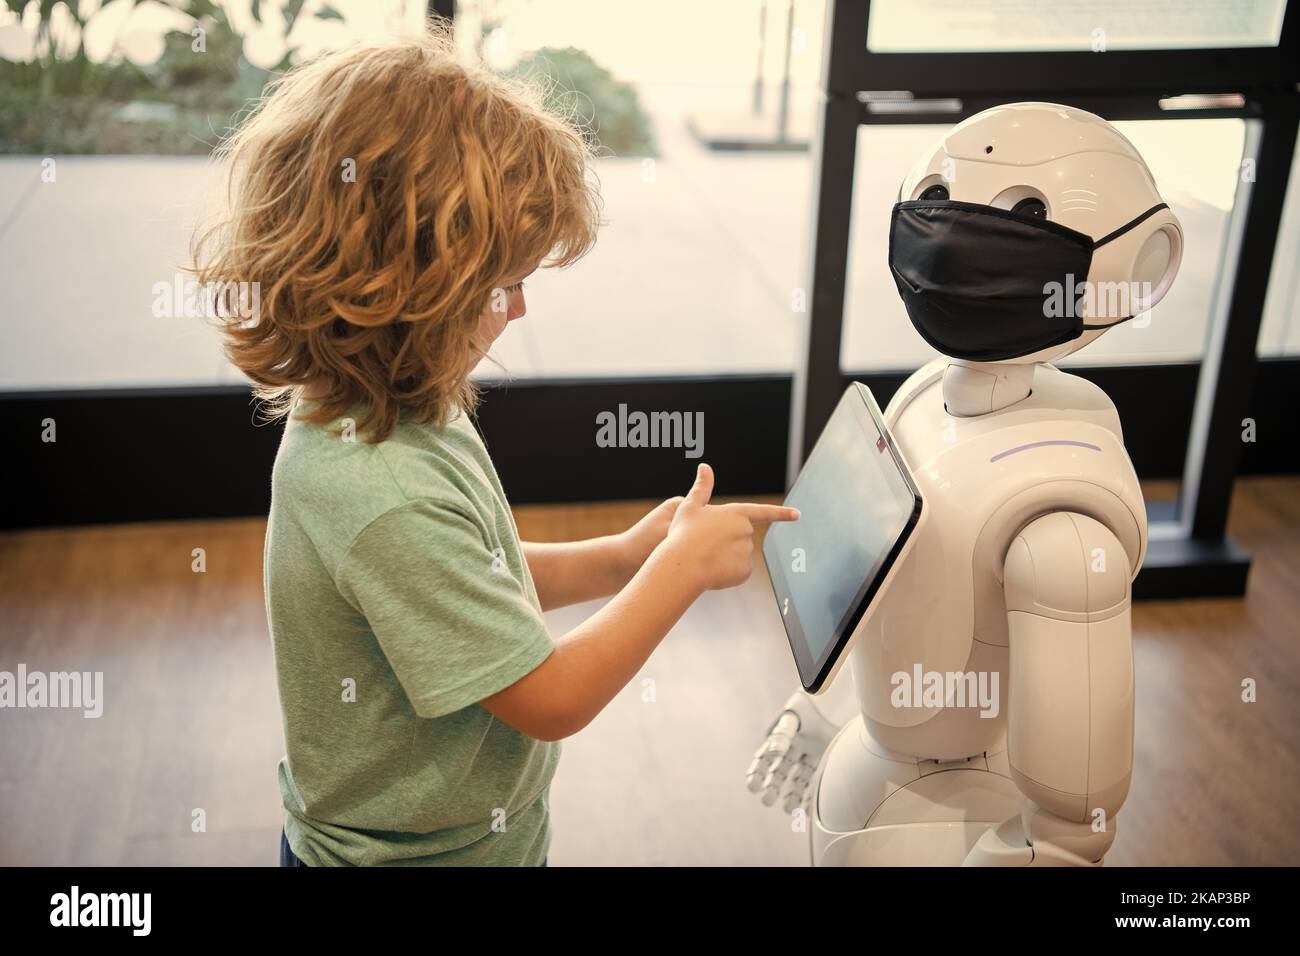 un gamin occupé interagit avec l'intelligence artificielle du robot, la communication Banque D'Images